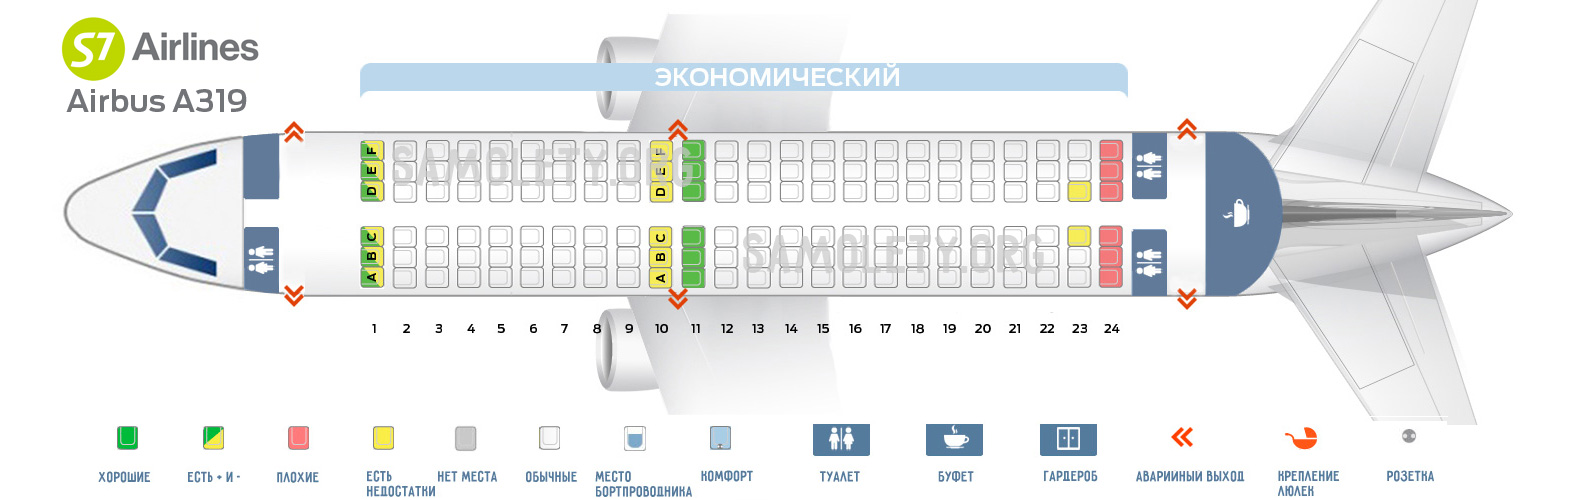 Все о салоне боинг 737 800 нордстар: схема расположения лучших мест в самолете